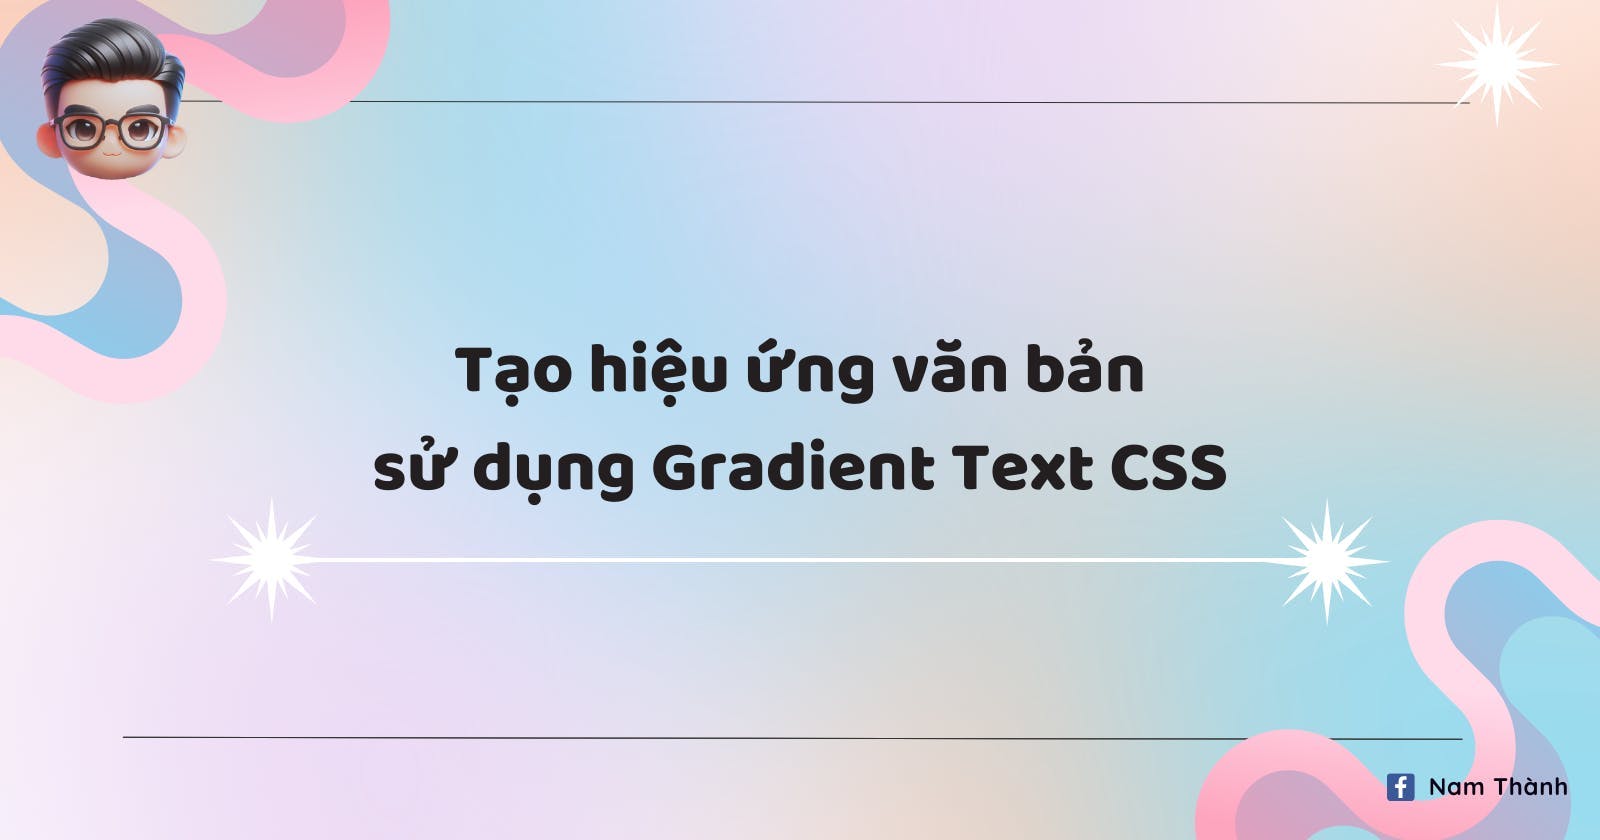 Tạo hiệu ứng văn bản sử dụng Gradient Text CSS